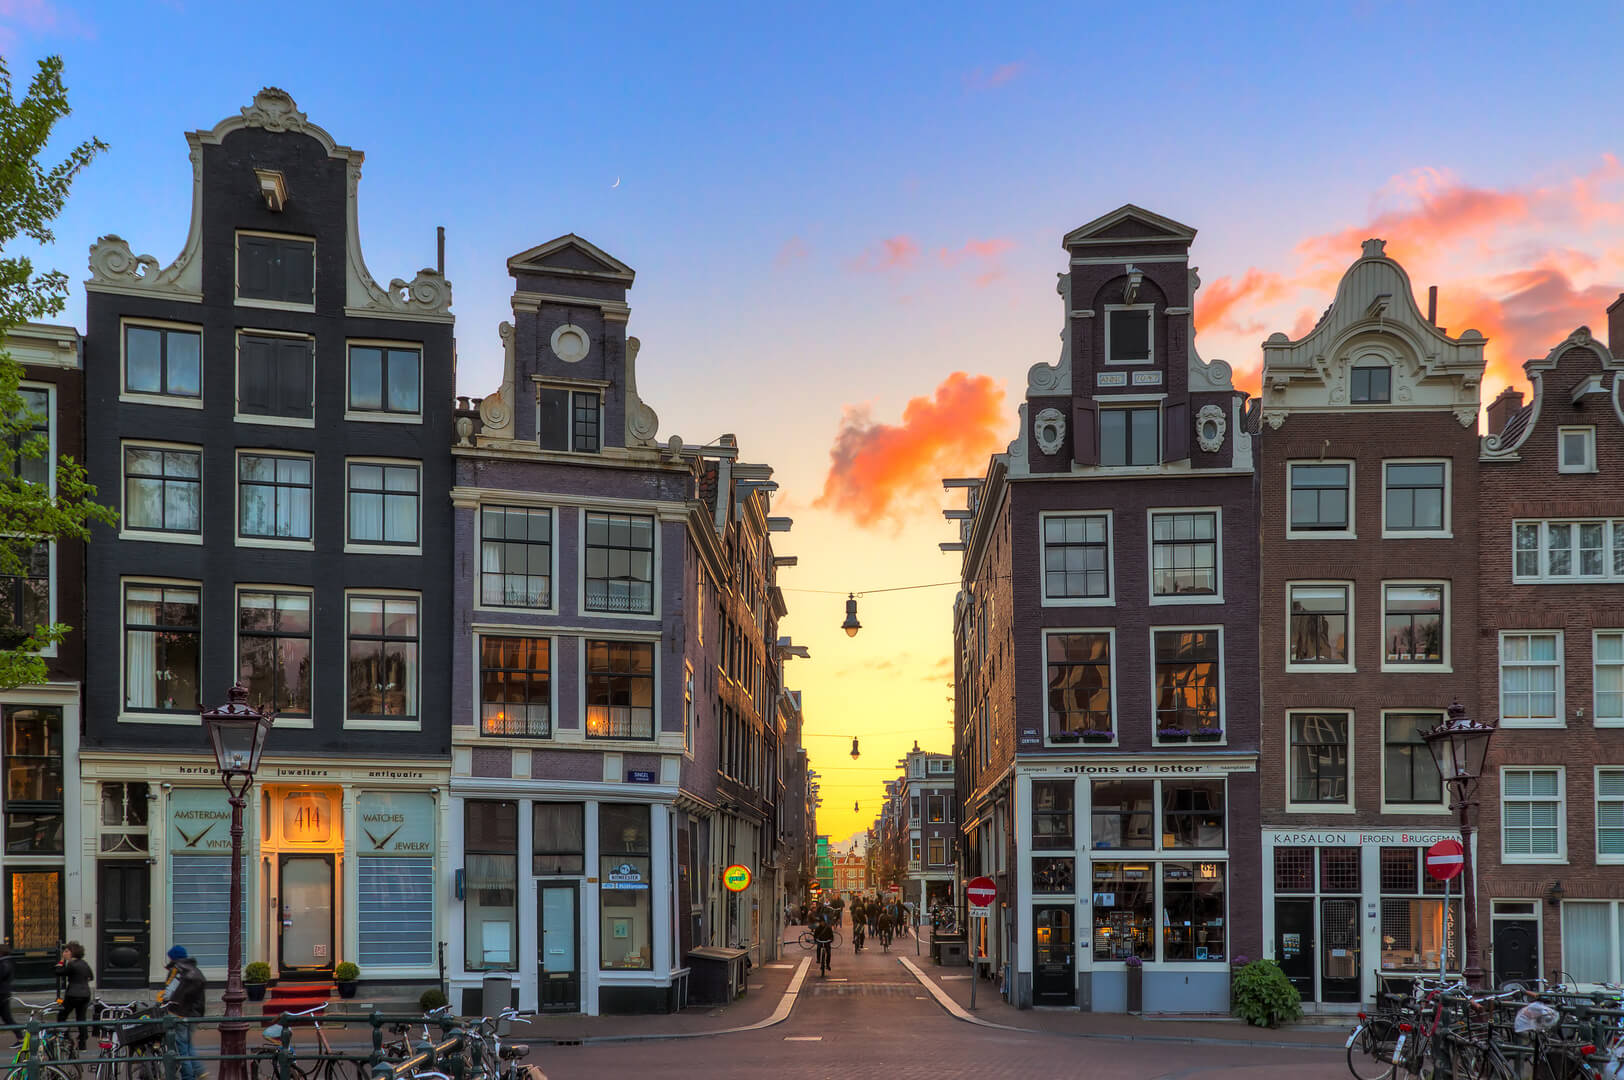 Красивый закат на одной из девяти маленьких улочек, популярного туристического места в Амстердаме, Нидерланды